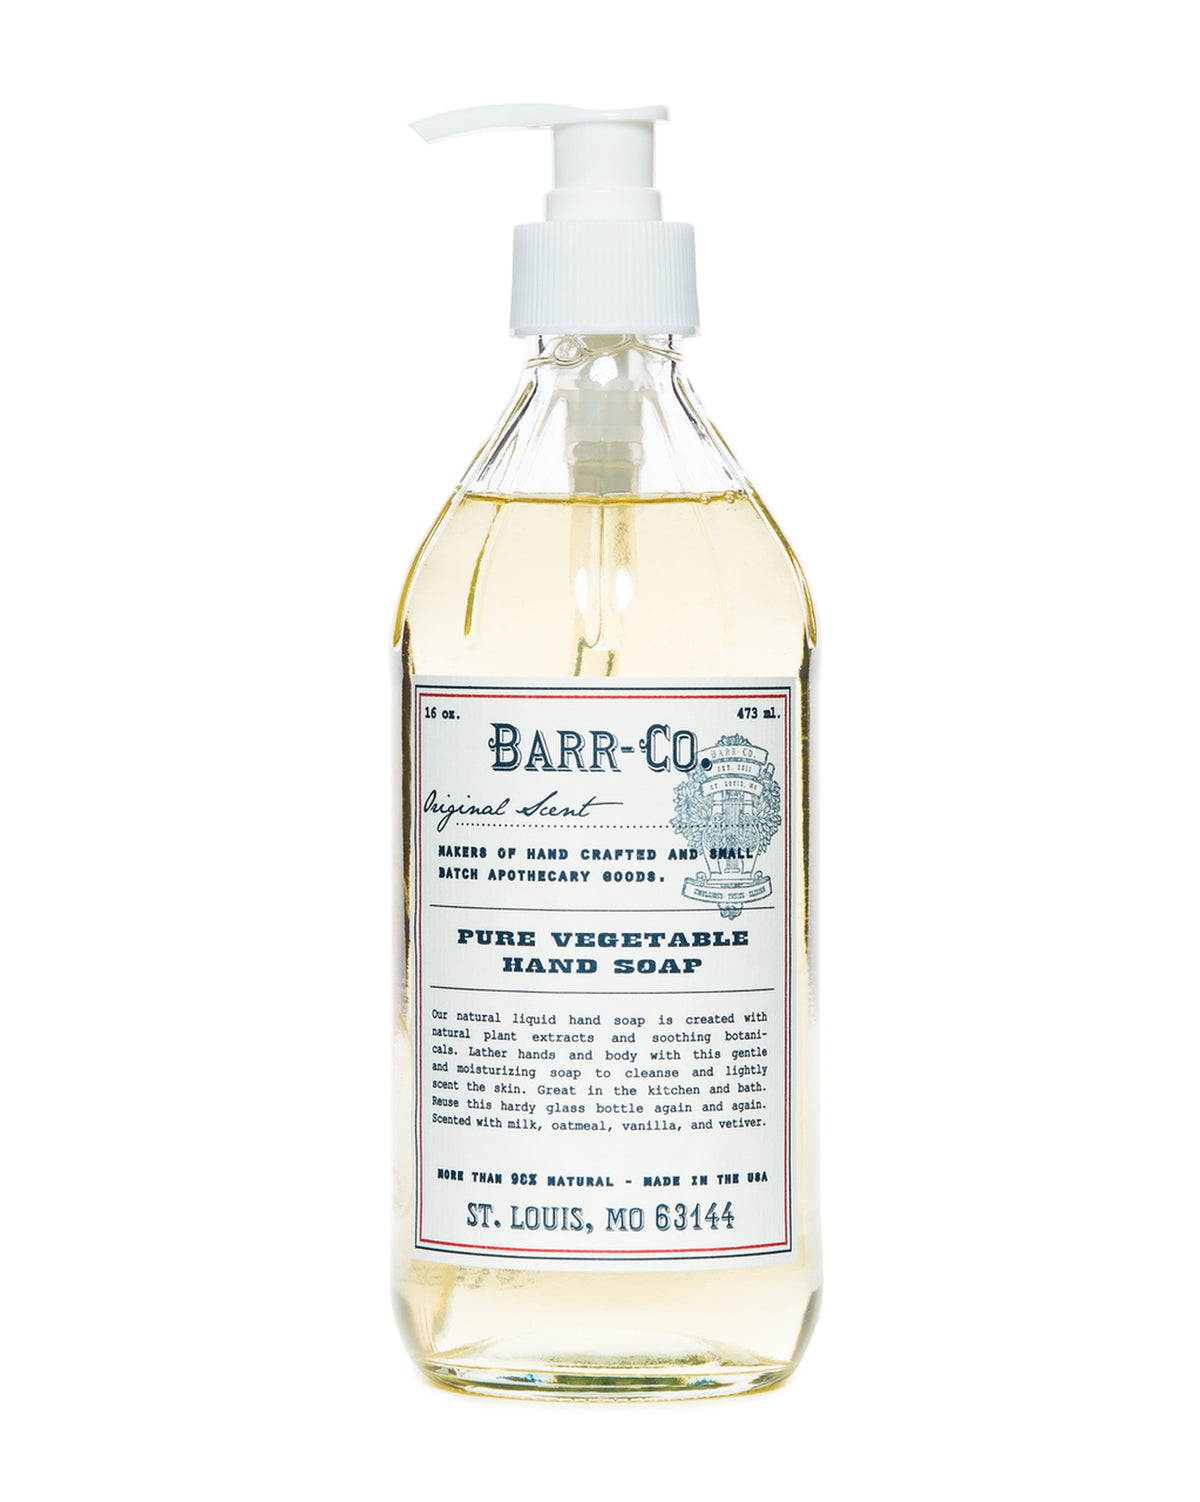 Barr-Co. Original Scent Liquid Hand Soap